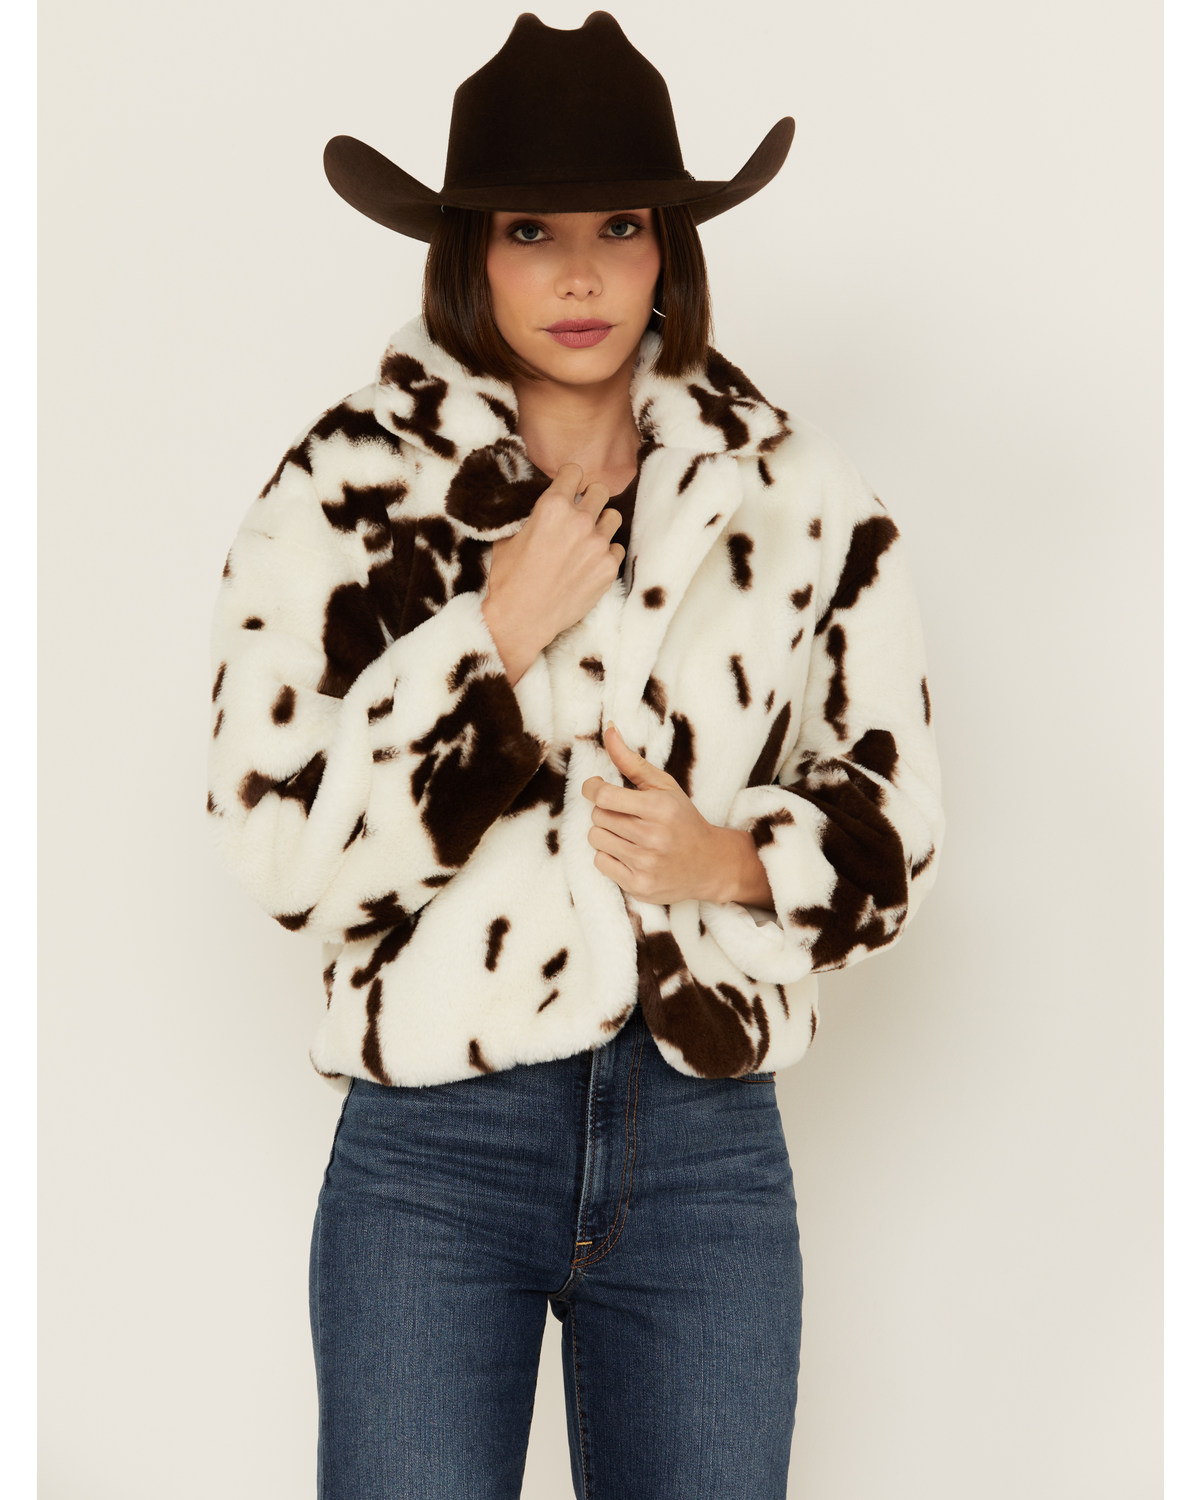 Ashley Women's Cow Print Faux Fur Jacket